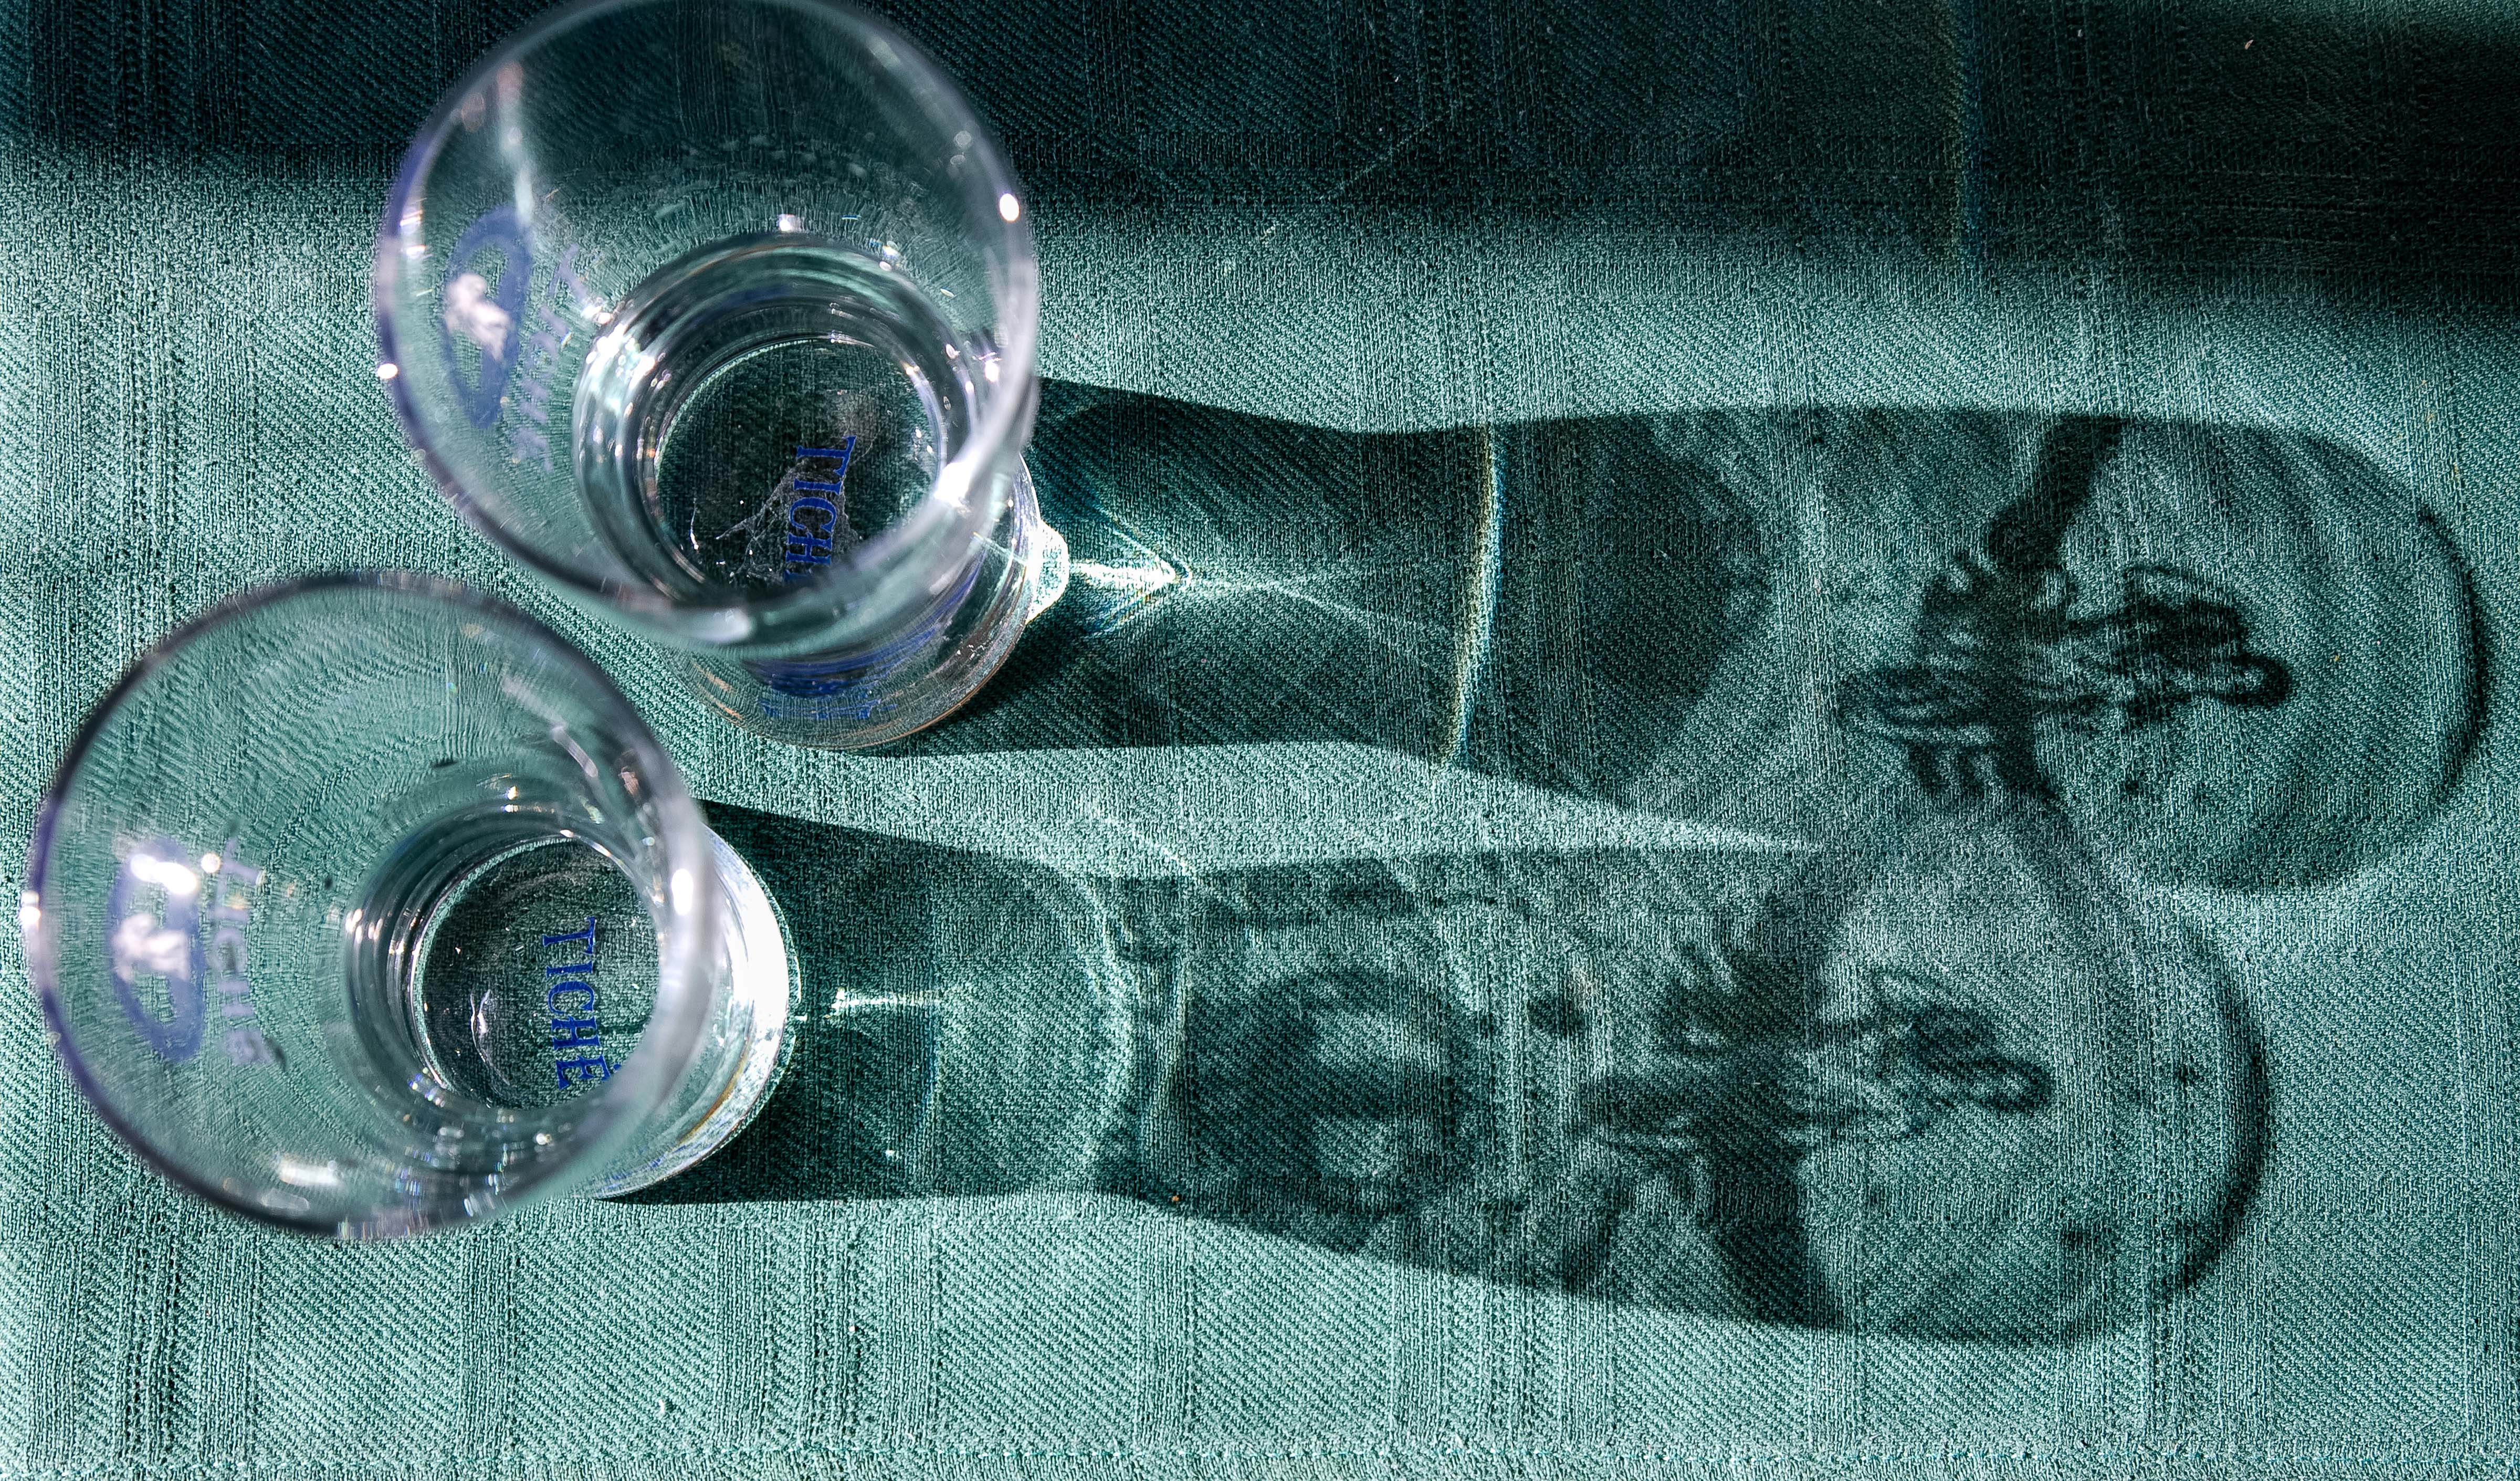 Lithuania, Telsiu Prov, Table Glass, 2010, IMG_2815